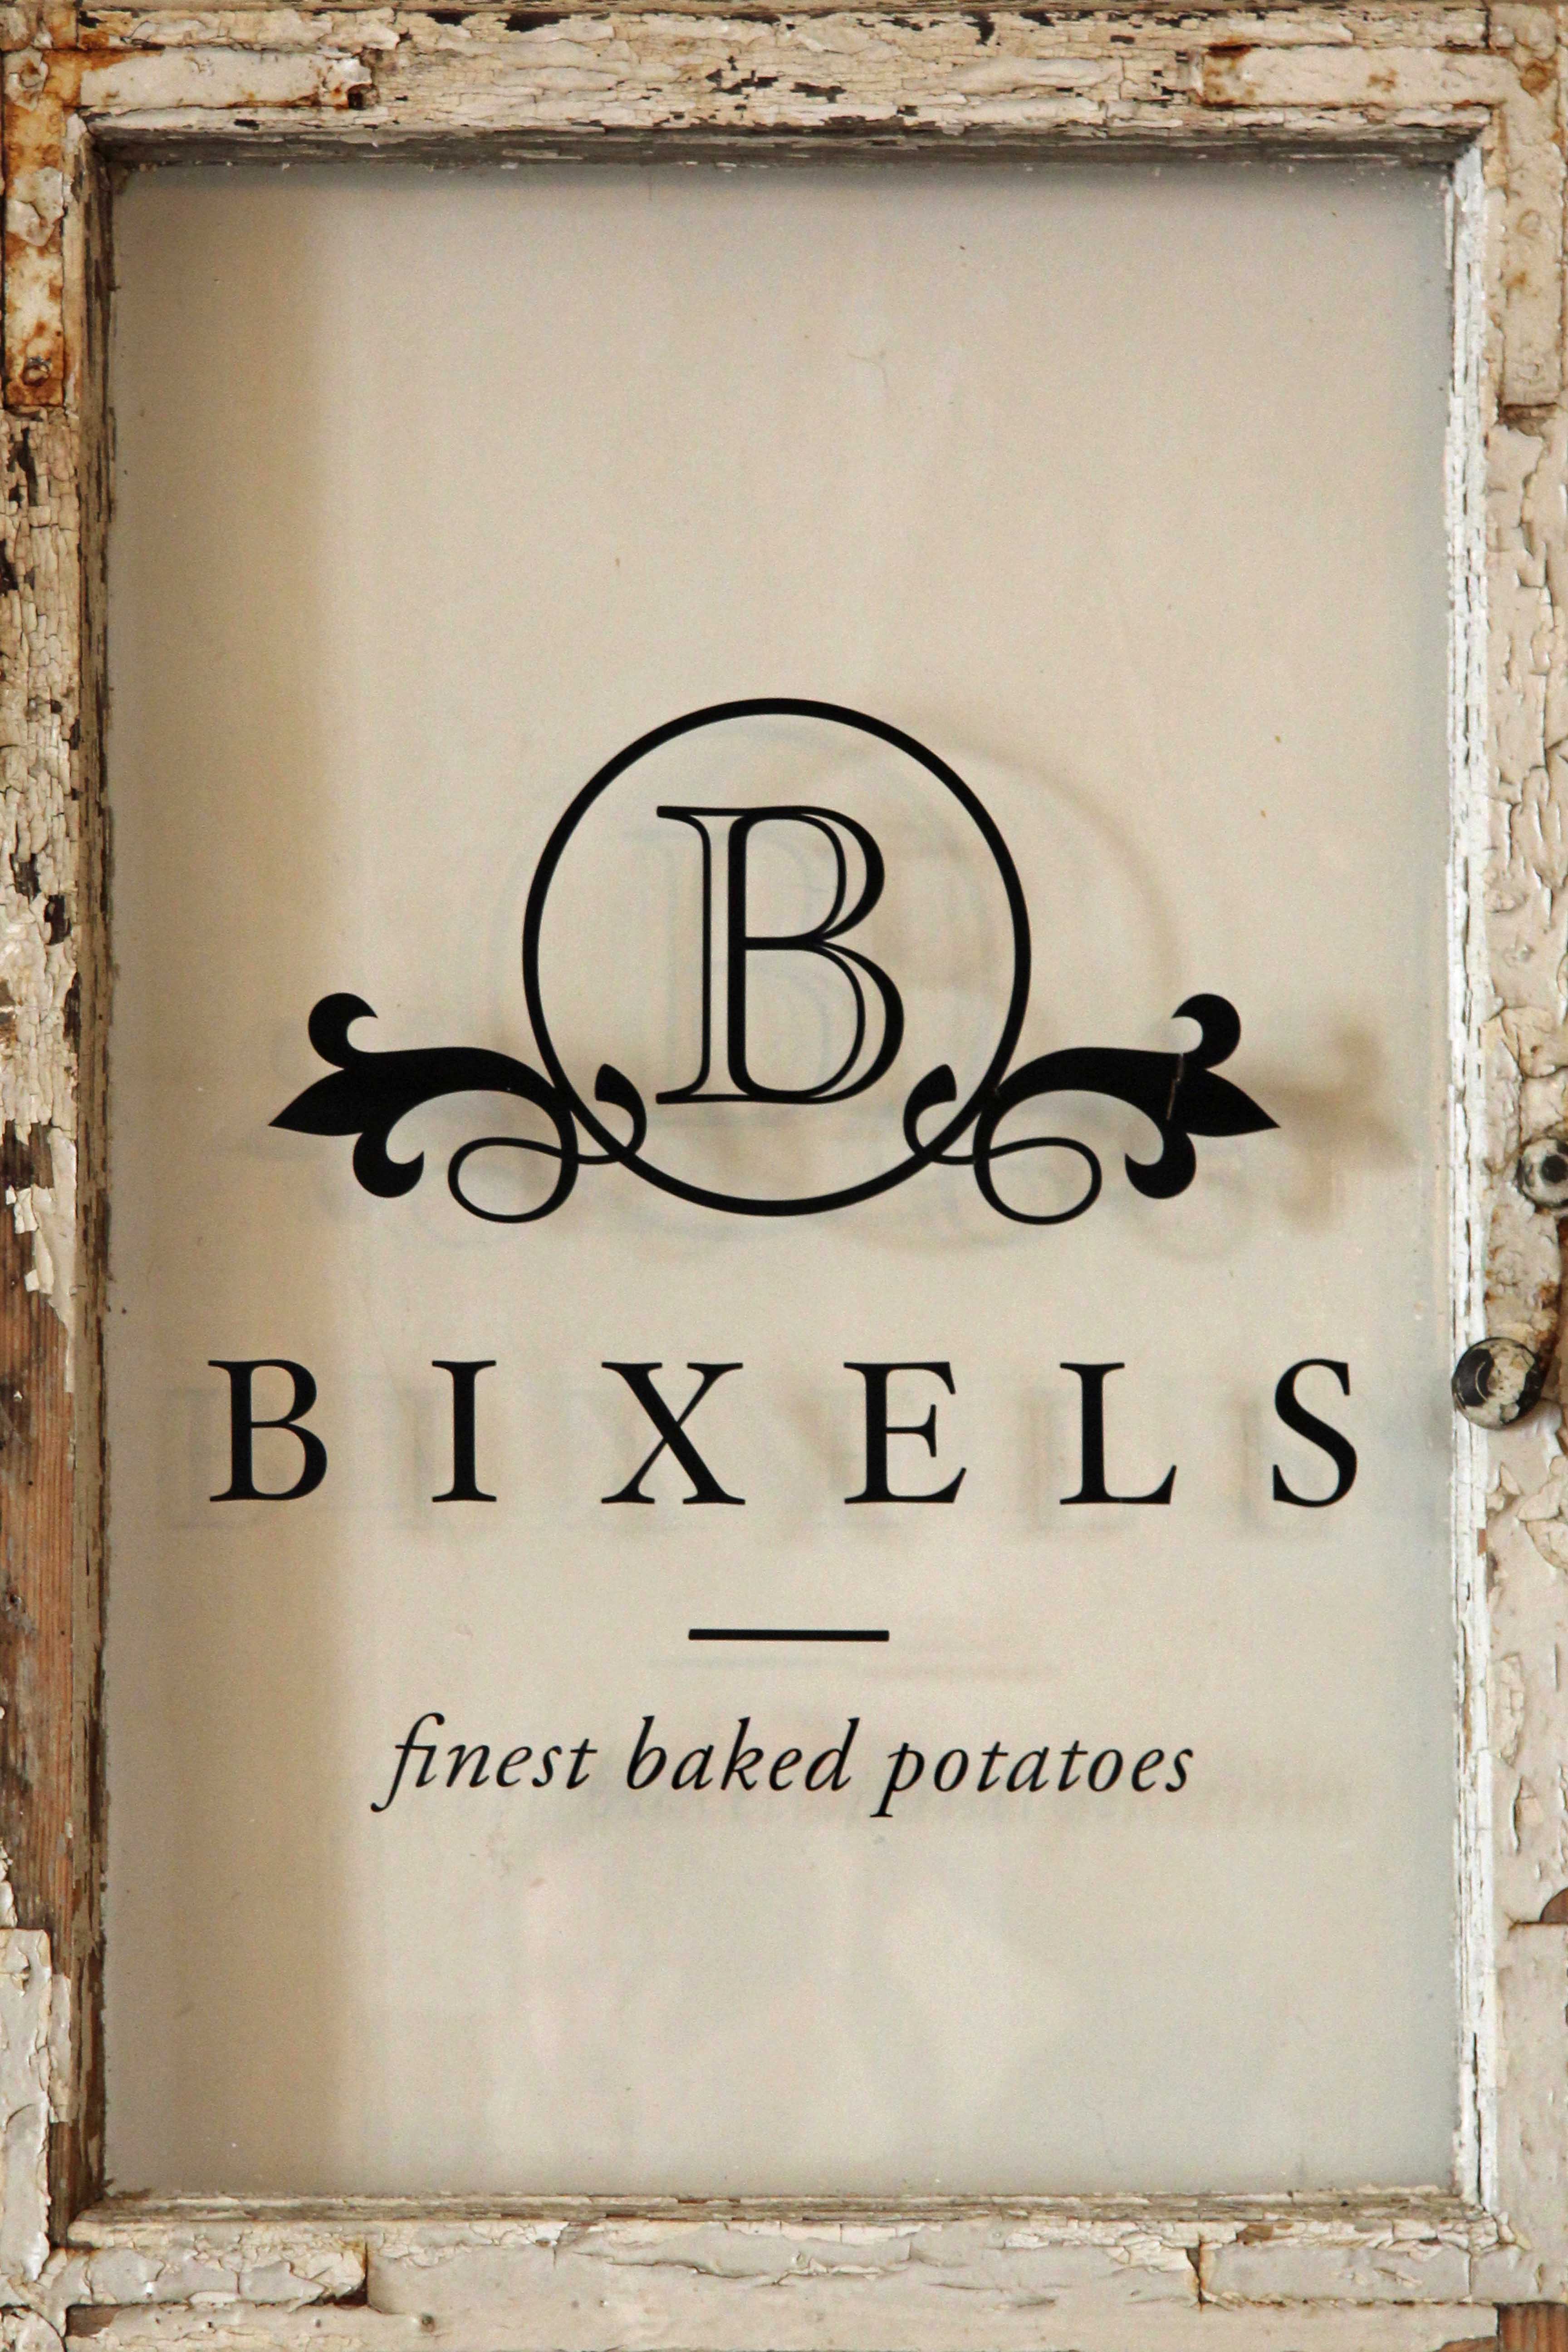 The Bixels logo on an old window in Bixels in Berlin Mitte